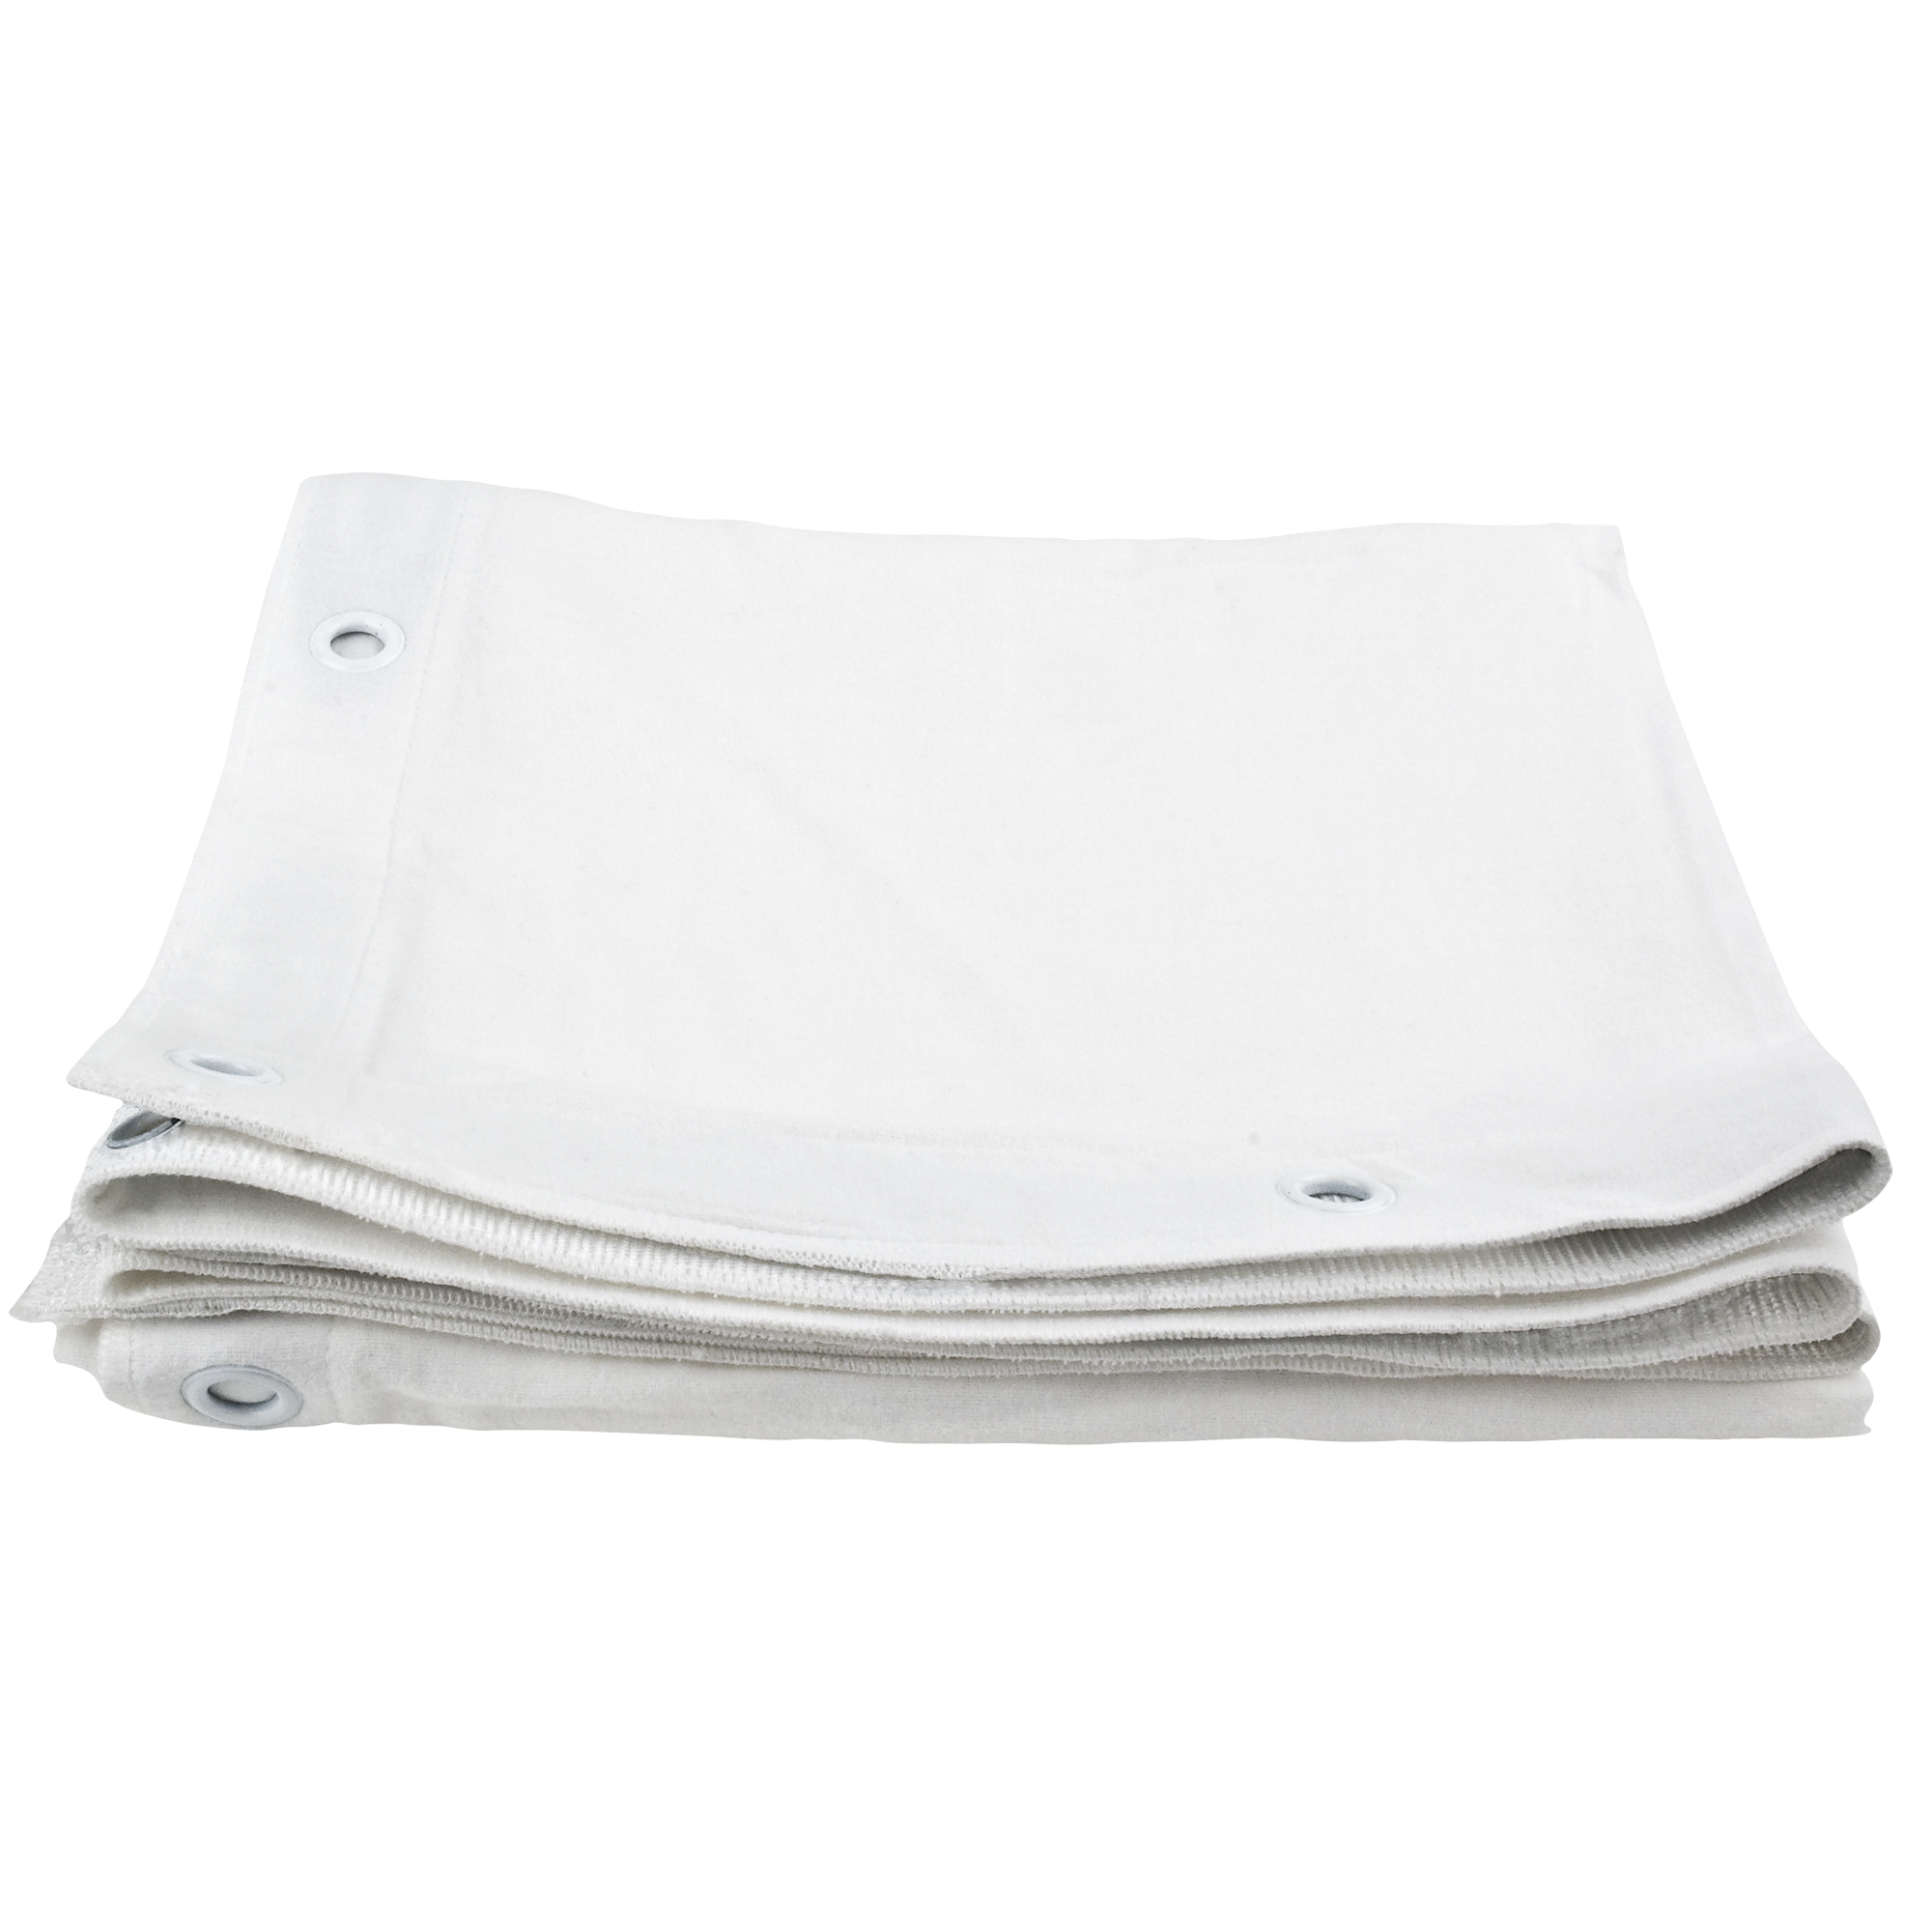 Showgear Square Cloth Dekomolton 160 g/m² Weiß - 340 (B) x 340 (H) cm - 60 Bindungsgummis